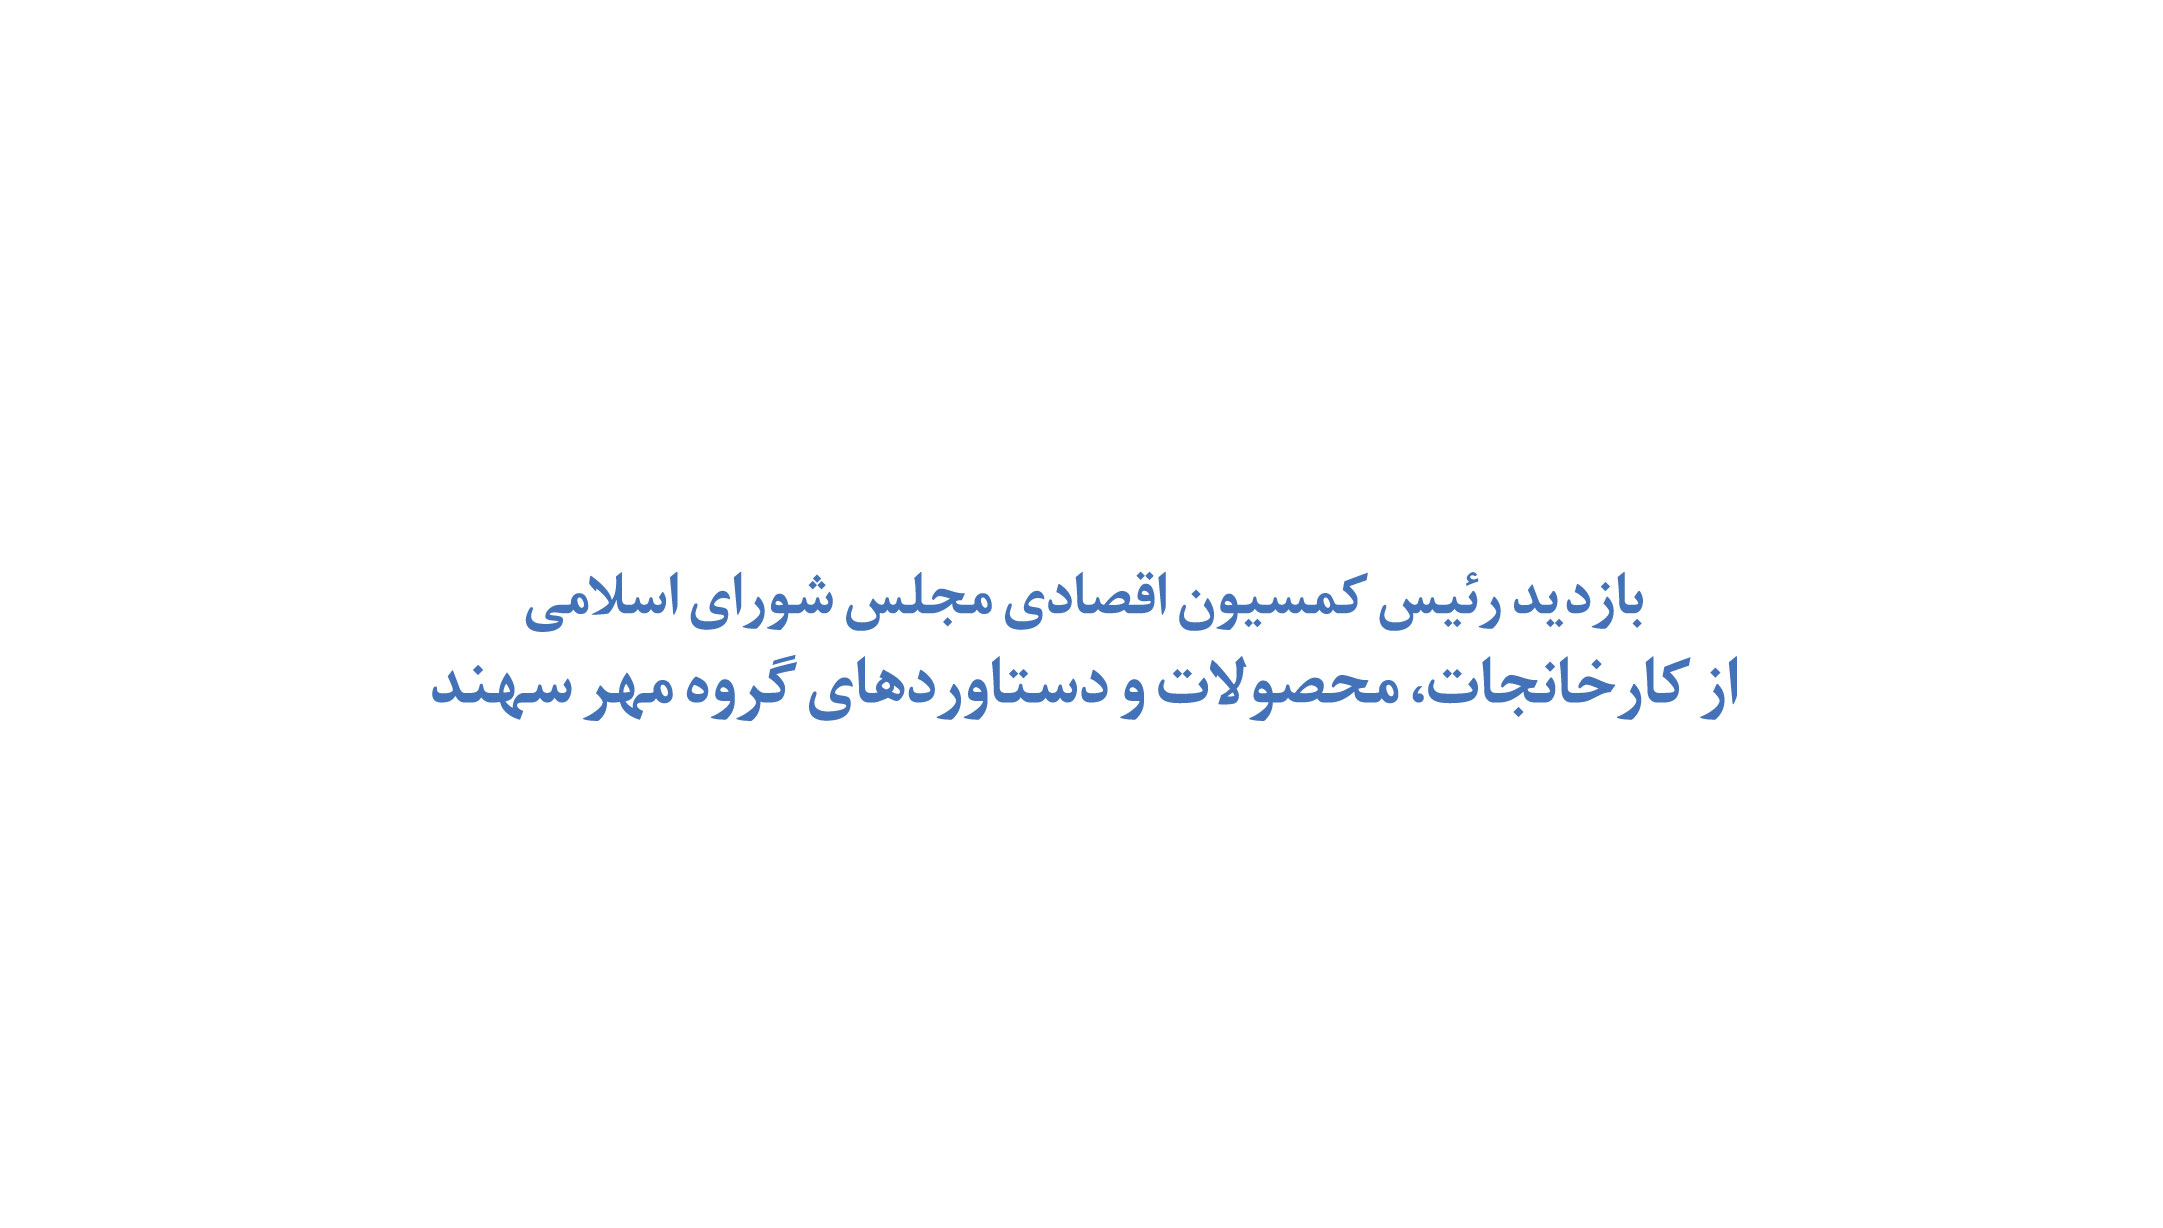 بازدید رئیس کمسیون اقصادی مجلس شورای اسلامی از کارخانجات، محصولات و دستاوردهای گروه مهر سهند